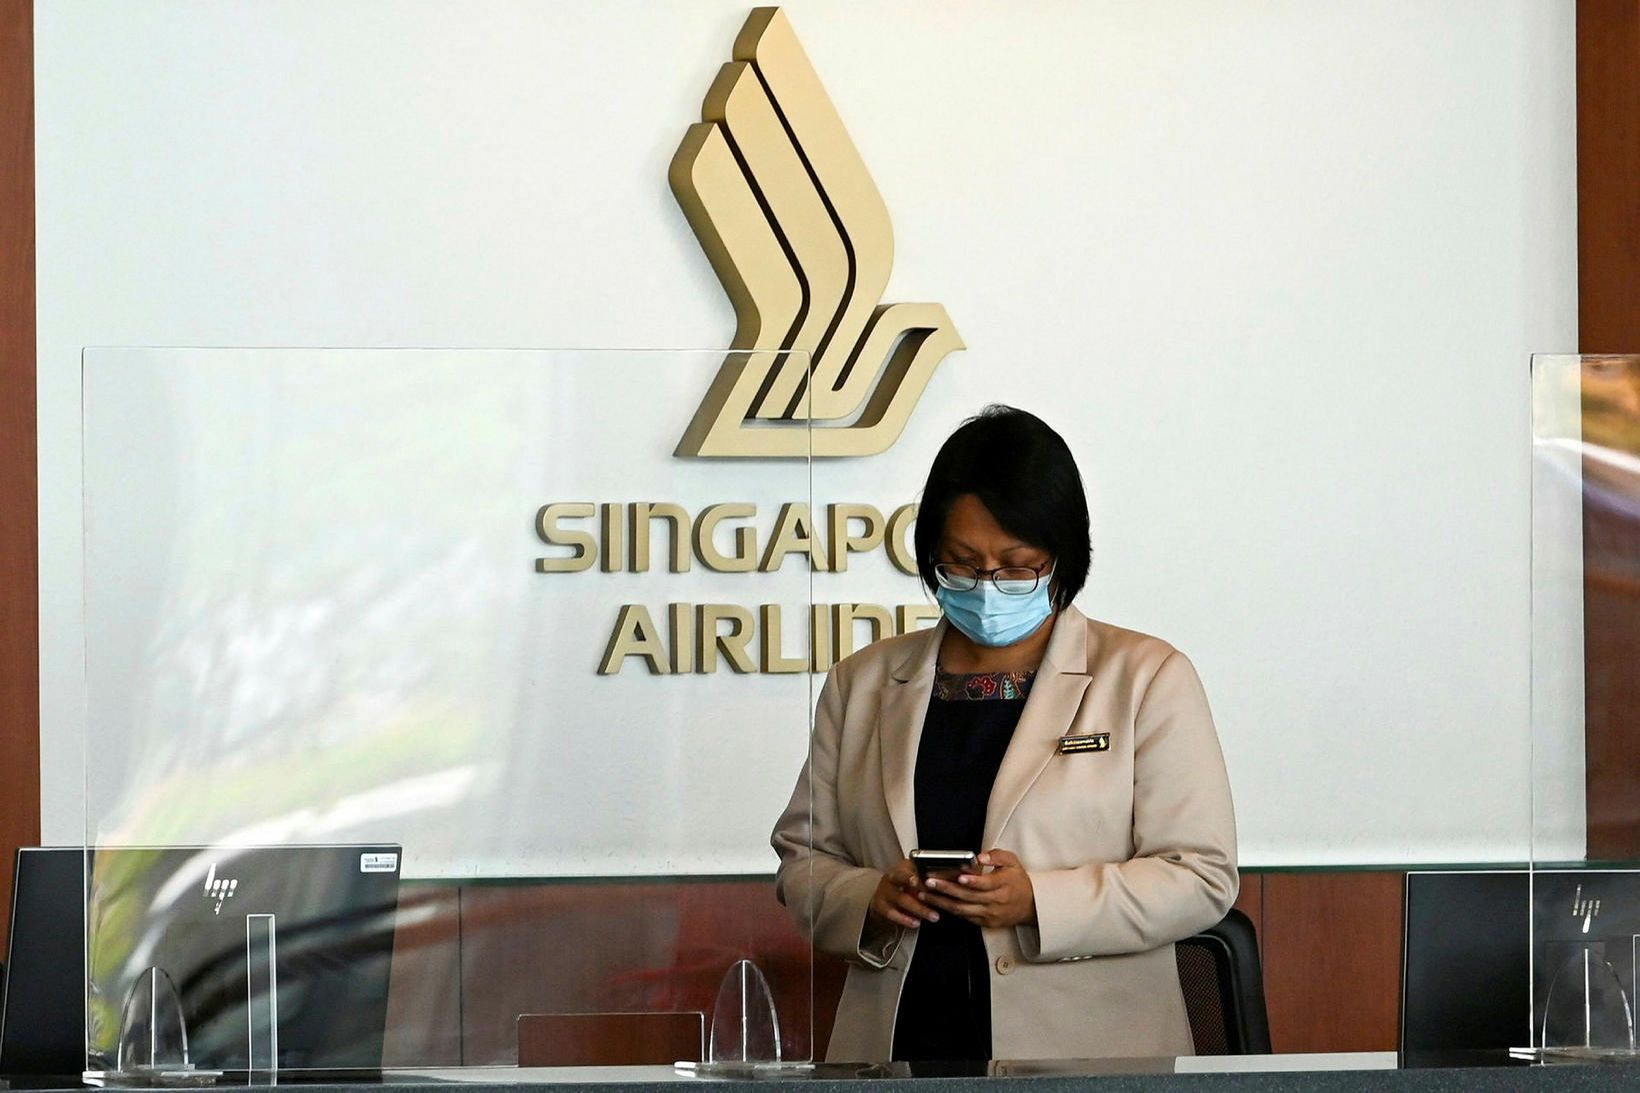 Uppátæki Singapore Airlines lagðist misvel í fólk.